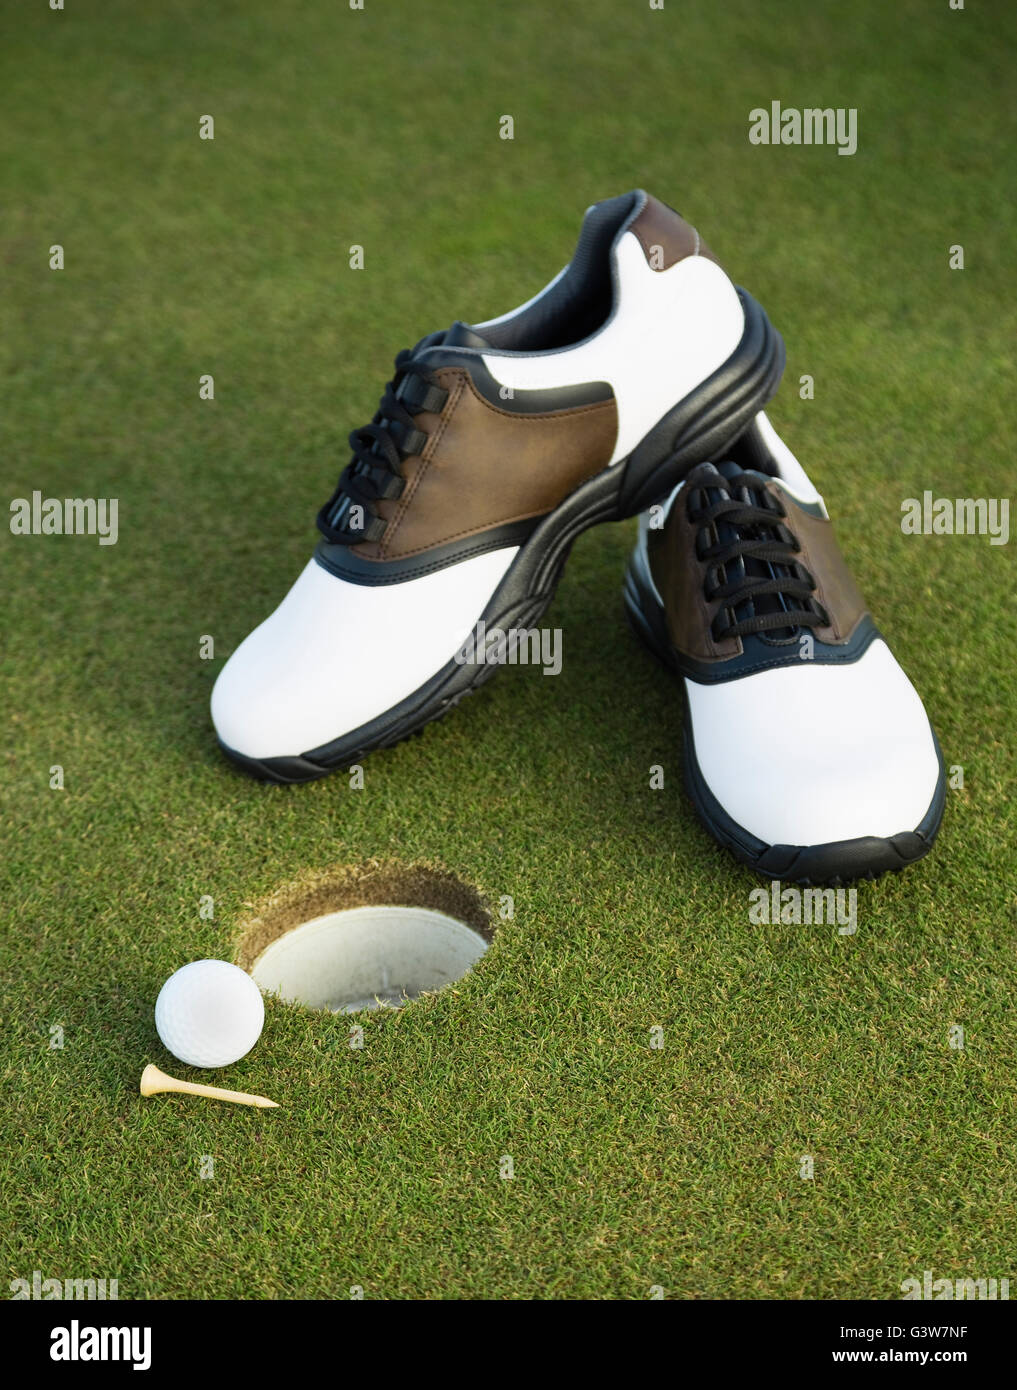 Los zapatos de golf, bolas de golf y tee por orificio Foto de stock